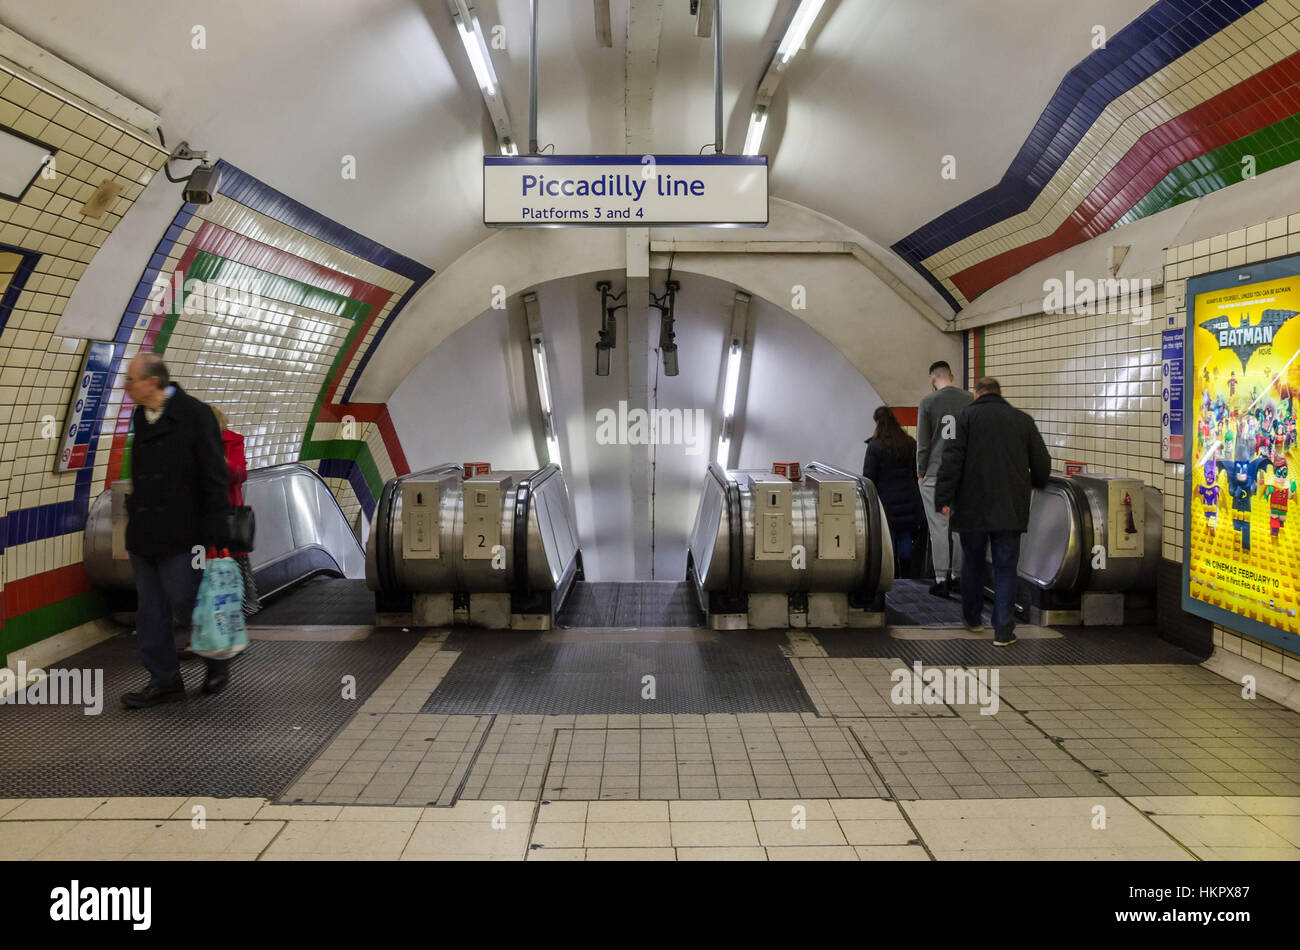 Die Oberseite der Rolltreppen hinunter die Piccadilly Line bei einer u-Bahnstation in der Londoner U-Bahn. Stockfoto